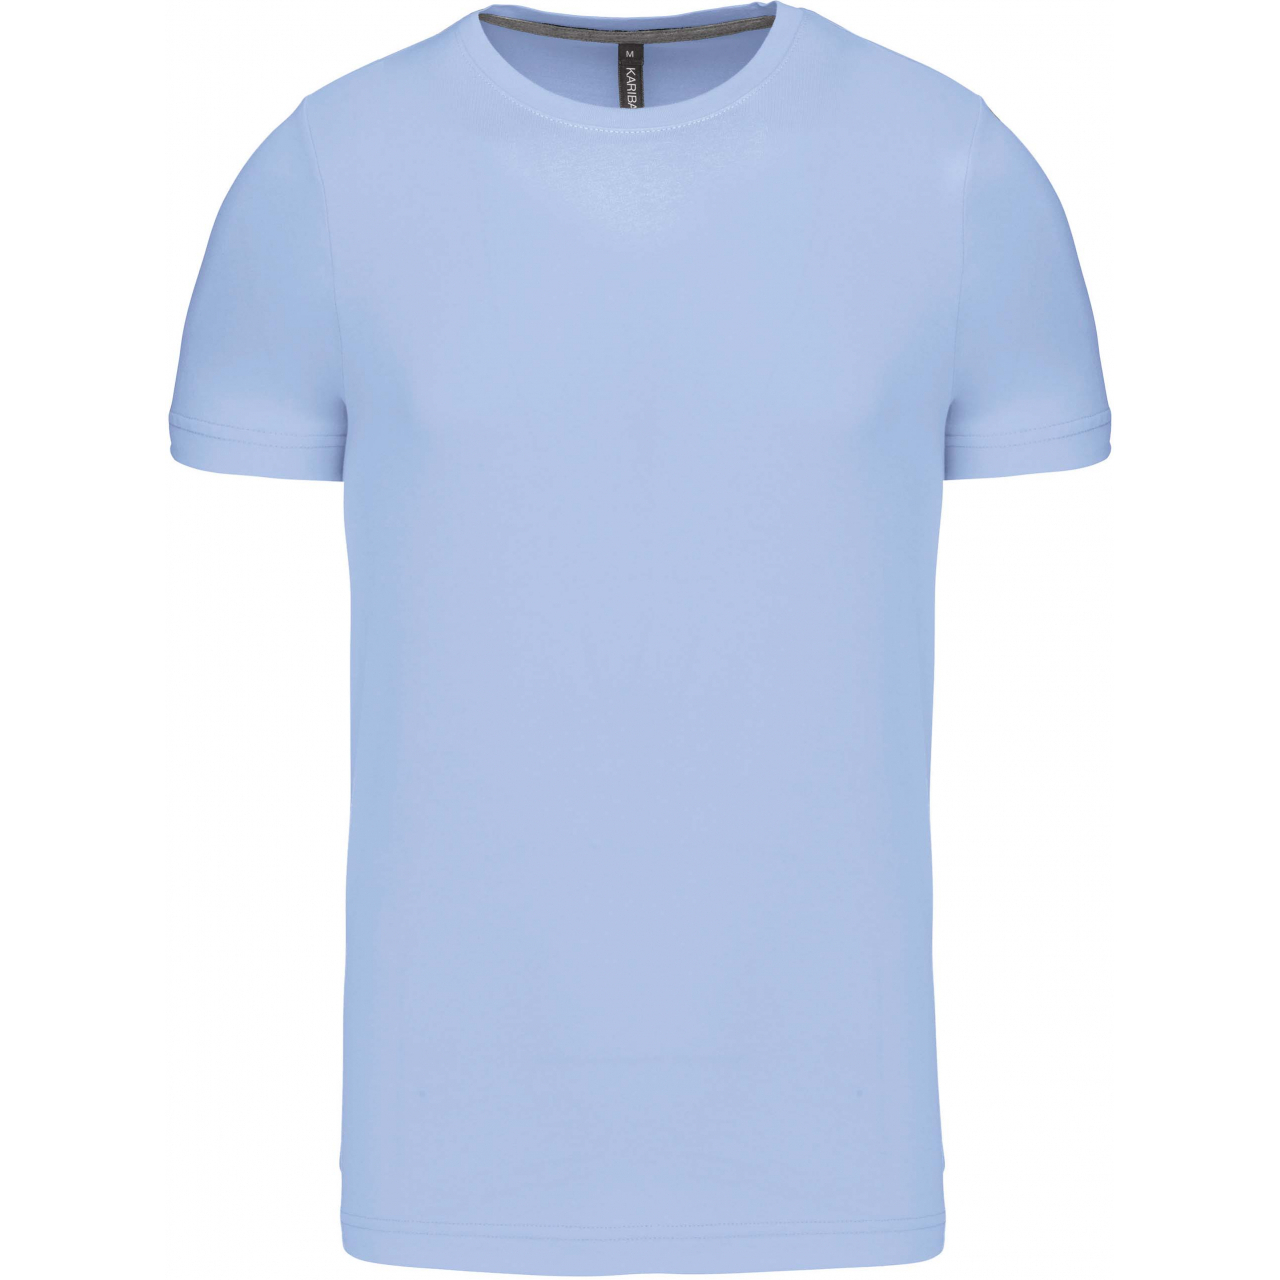 Pánské tričko Kariban krátký rukáv - světle modré, M